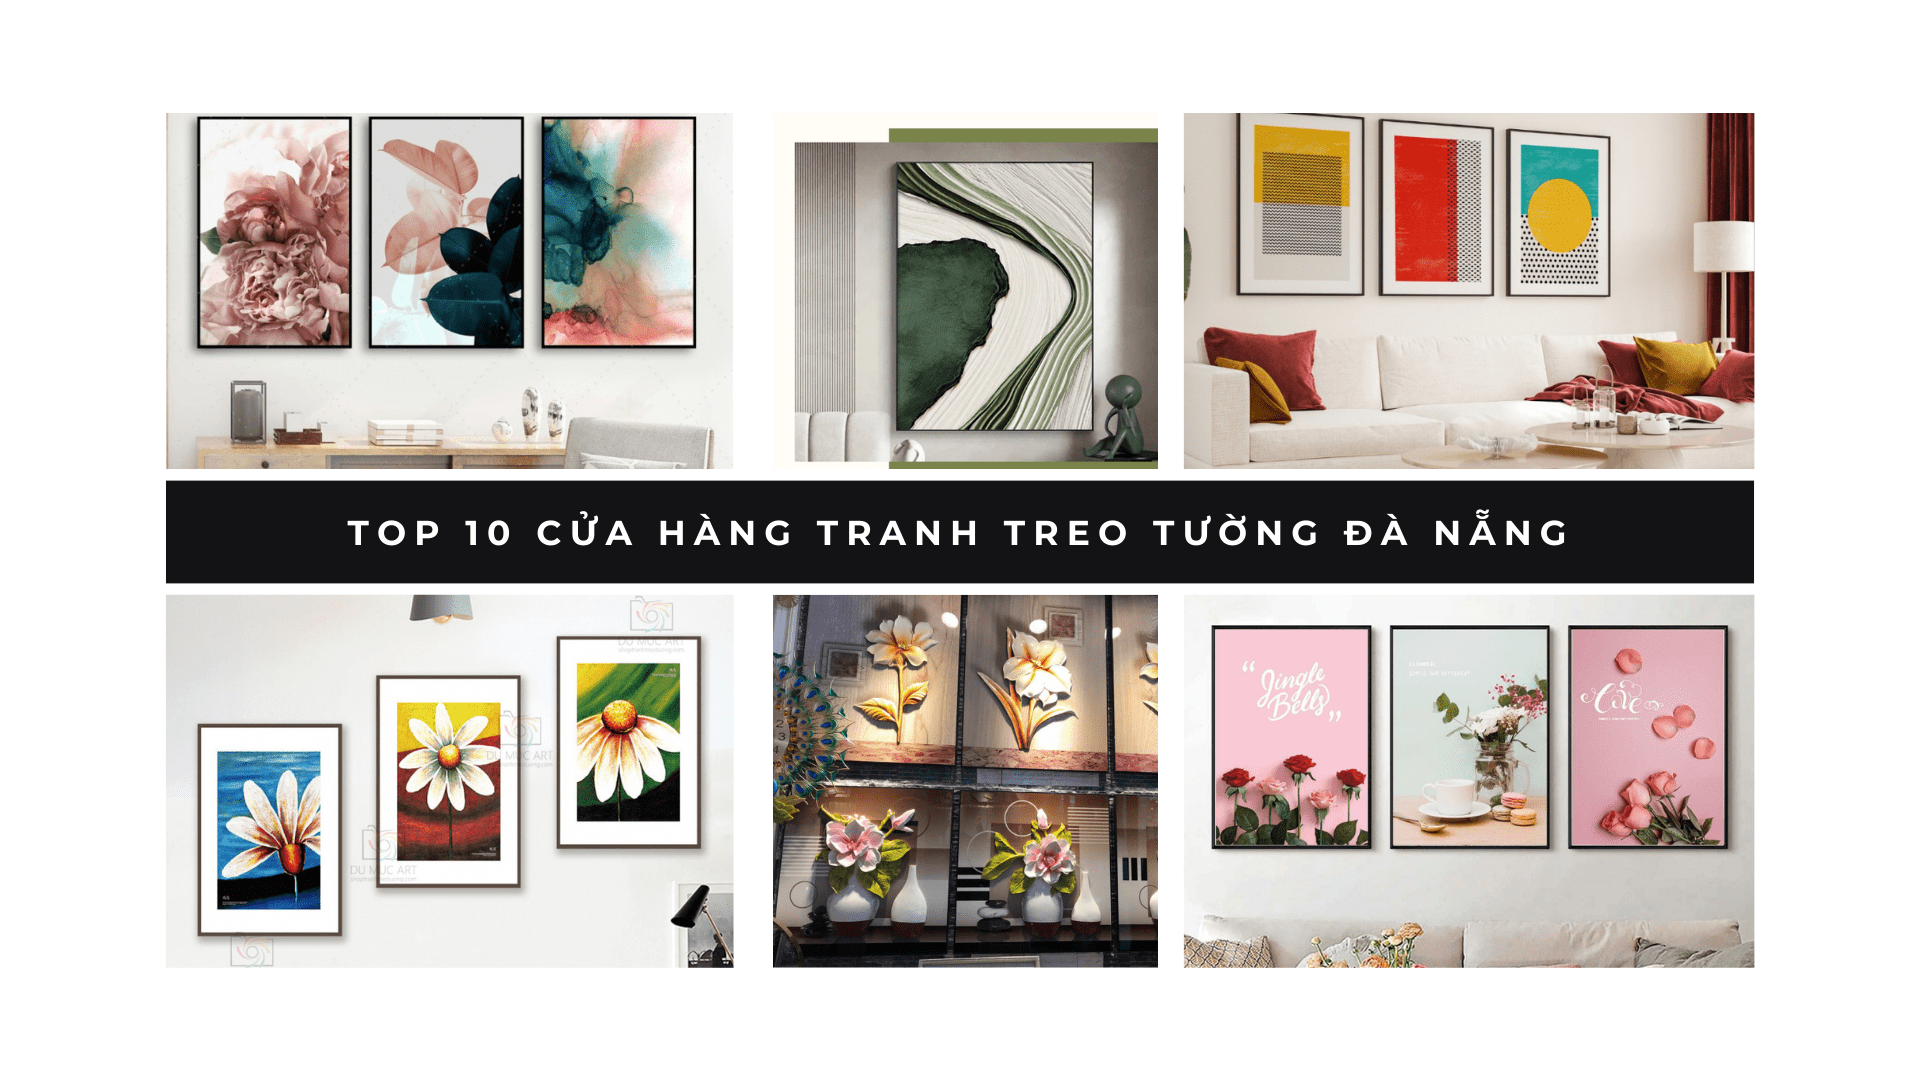 Top 10 cửa hàng tranh treo tường Đà Nẵng chất lượng